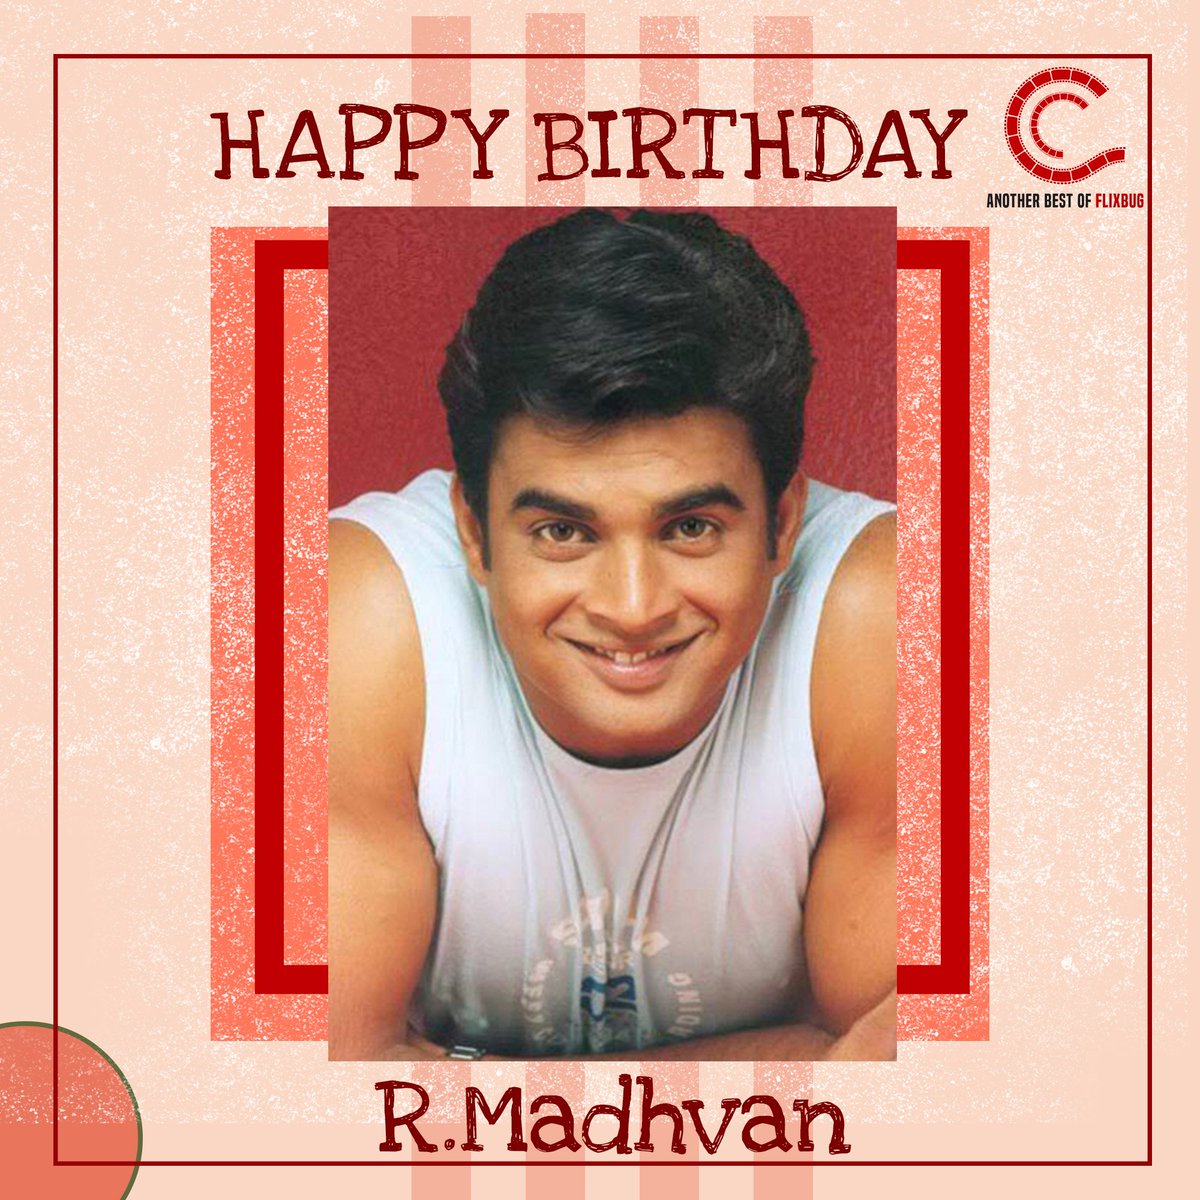 𝐂𝐢𝐢𝐧𝐞𝐞𝟑

Happiest Birthday to the versatile actor of indian cinema R. Madhavan from ciinee.

@ActorMadhavan

#happybirthday #rmadhavan #bestwishes #birthdaywish #versatile #actor #indiancinema #bollwood #celebration #newpost #ciinee